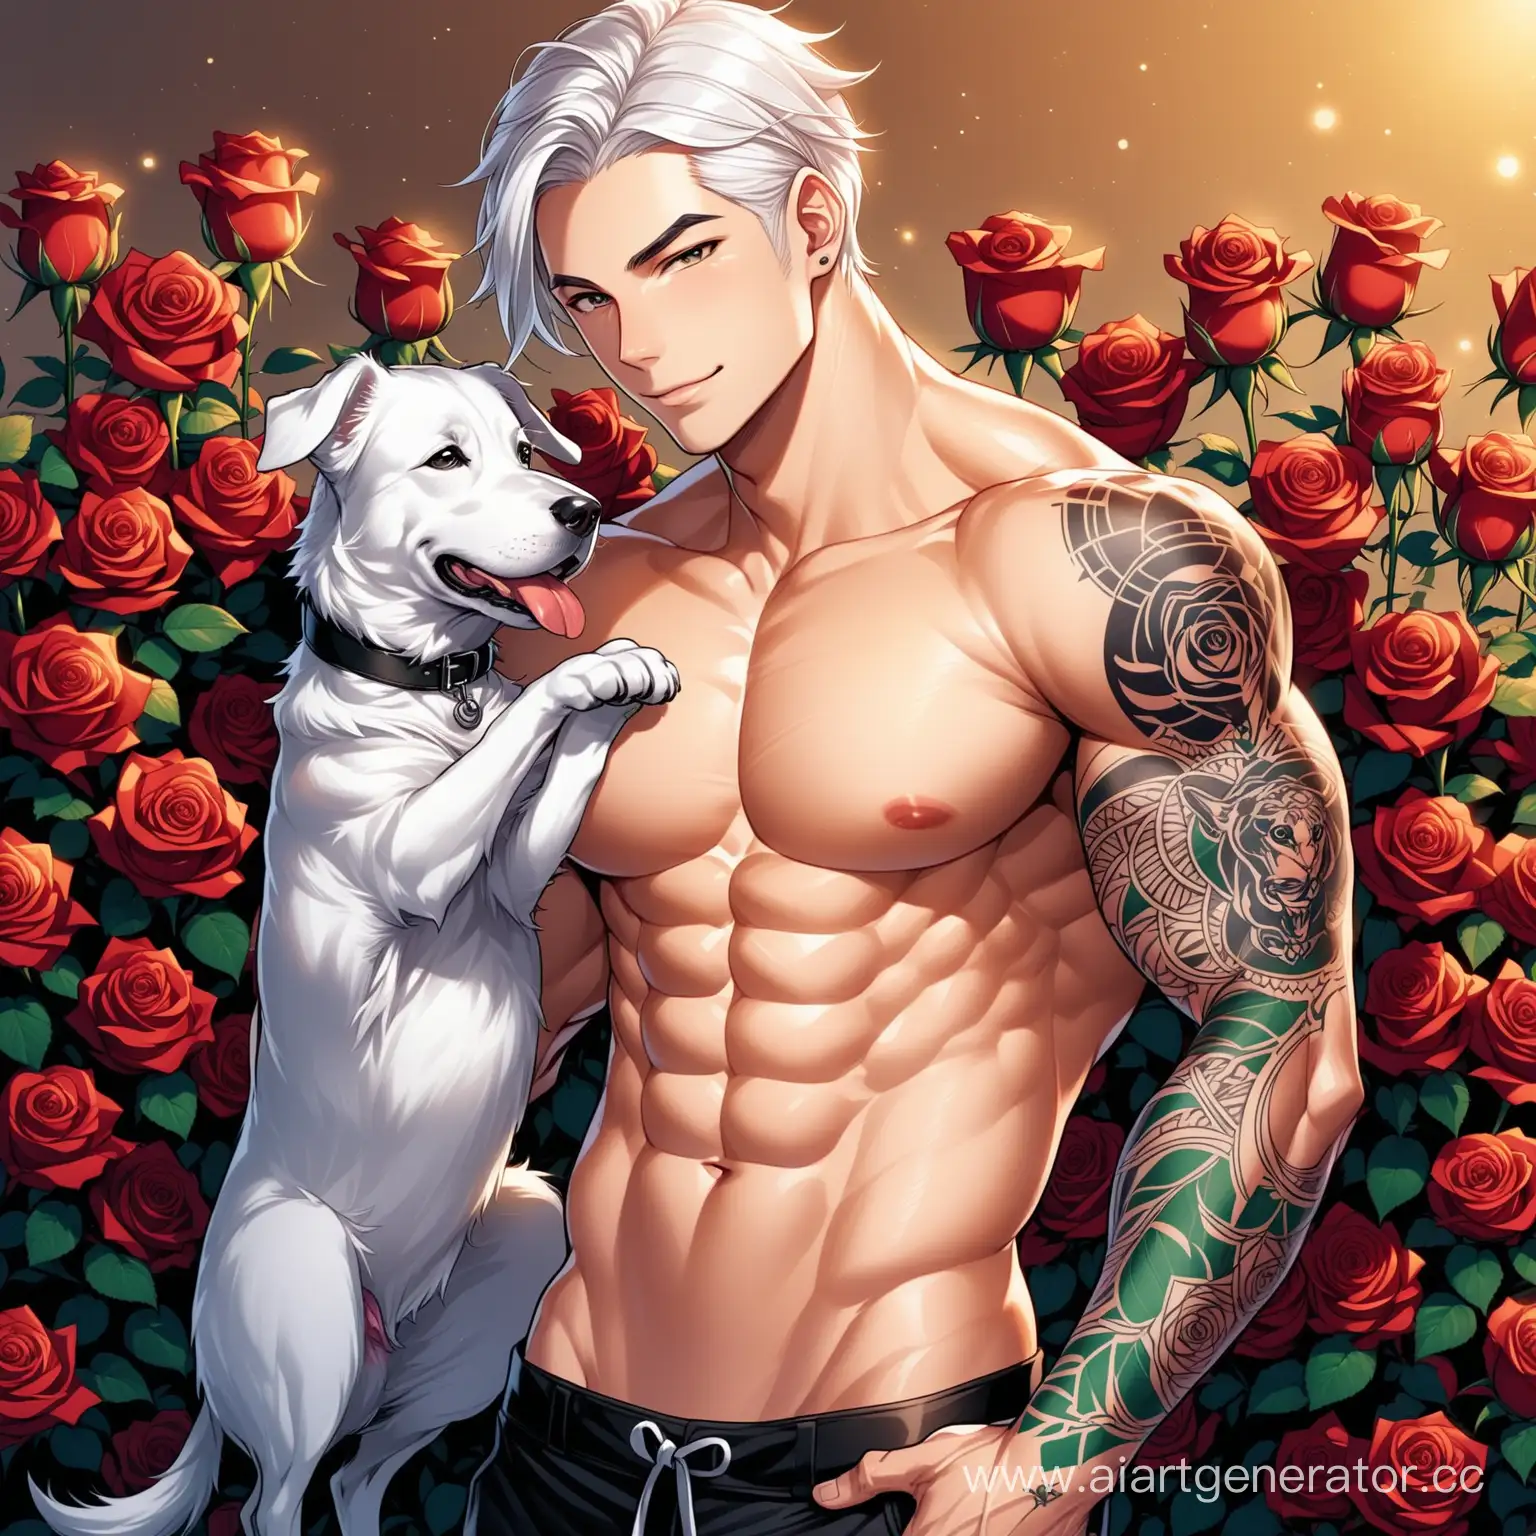 Парень, рост 1м 90 см, физик, накаченный, с татуировкой на правой руке, любит розы, богат, заботлив, верный, белые волосы, светлая кожа, любит собак